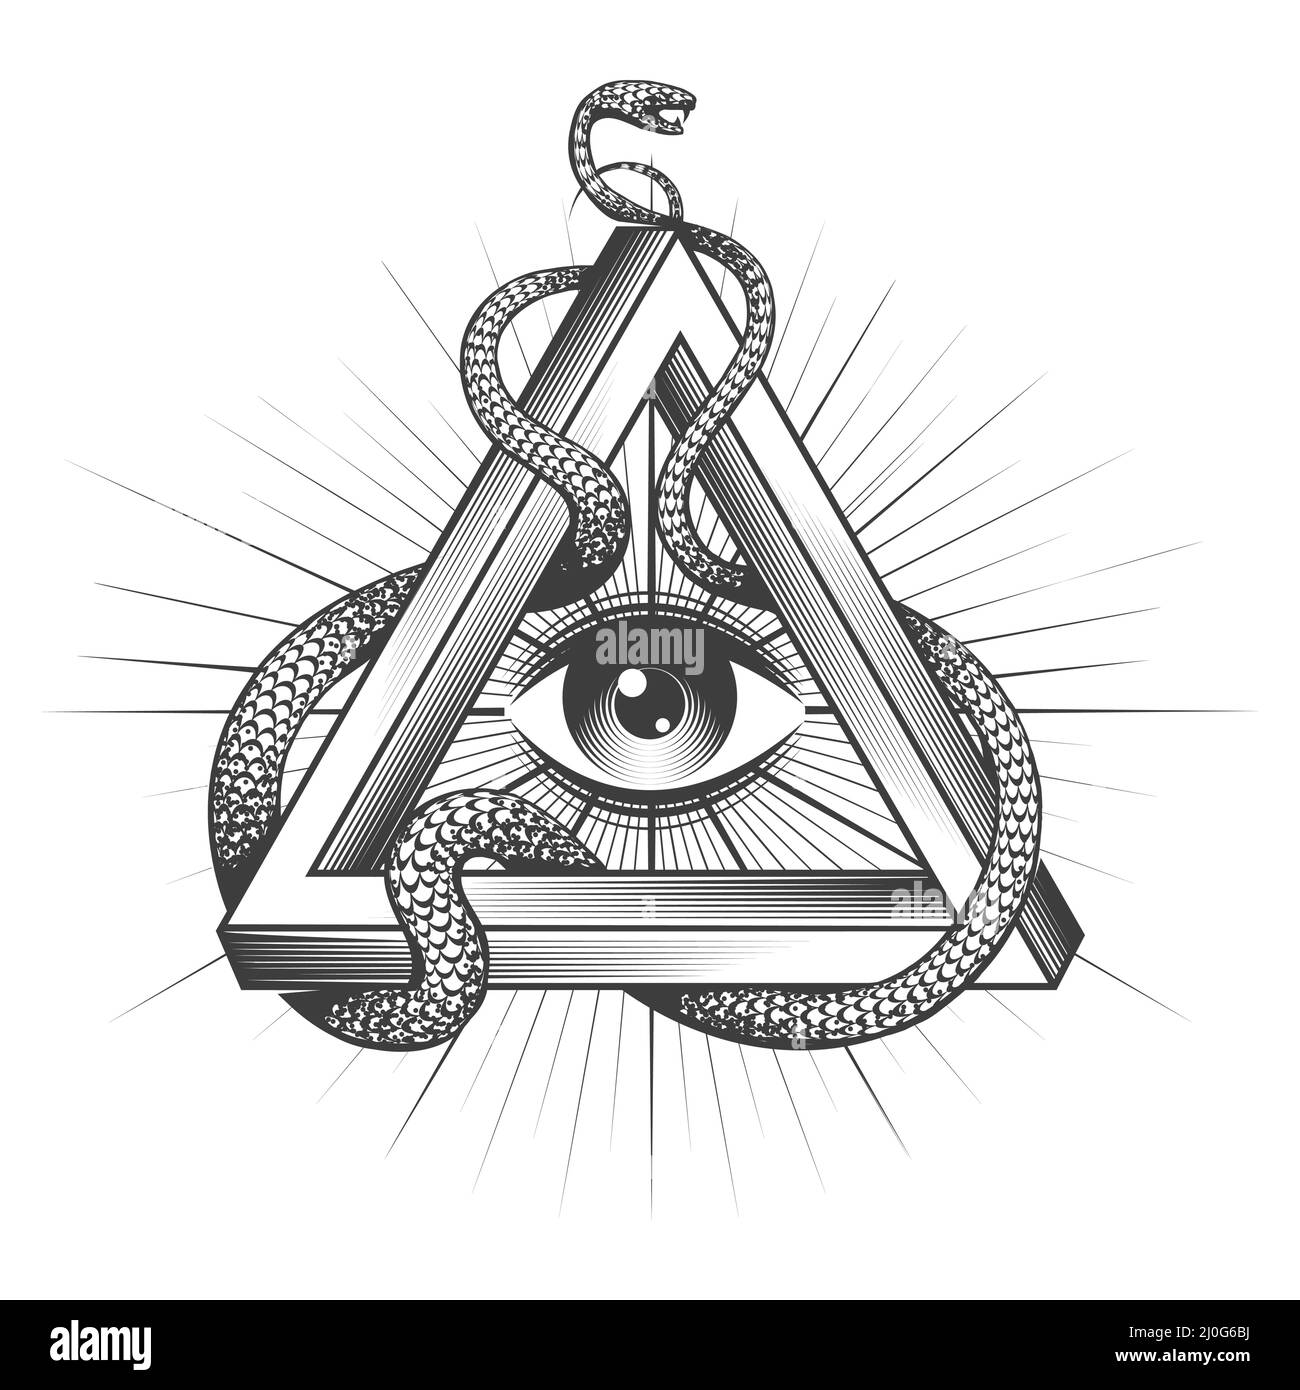 Tatouage de tous Masonic vue à l'intérieur de Triangle avec serpent de sagesse isolé sur blanc. Illustration vectorielle. Illustration de Vecteur